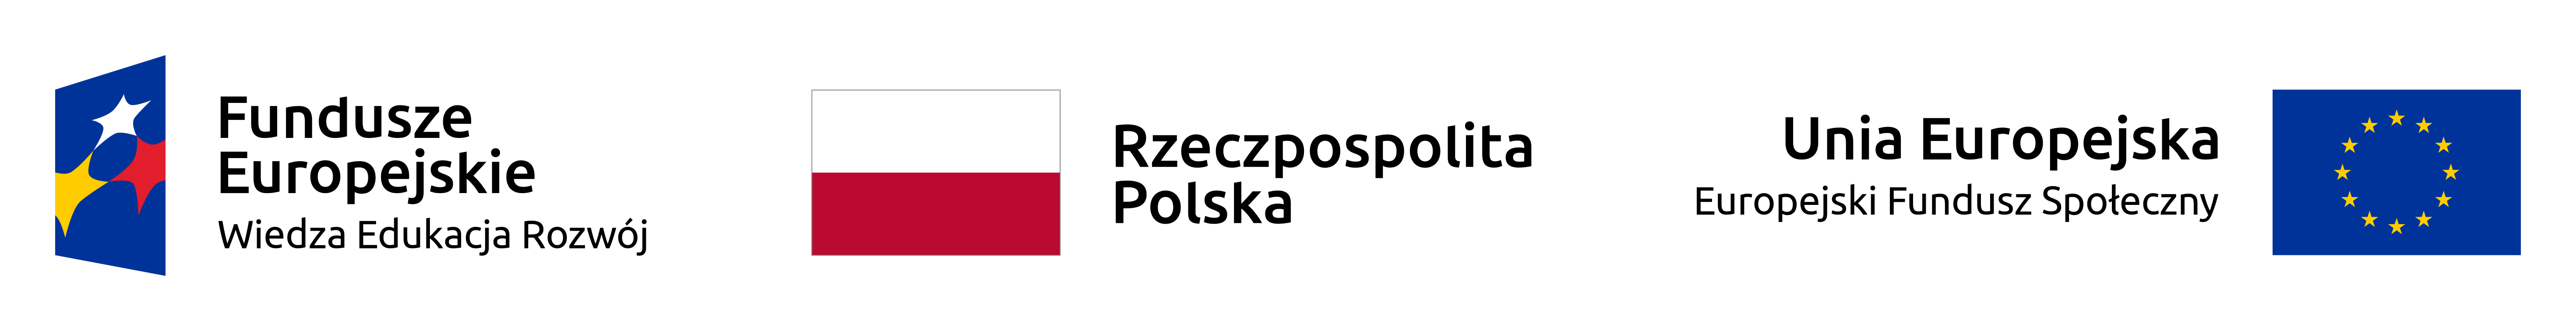 logo FE_POWER_PL